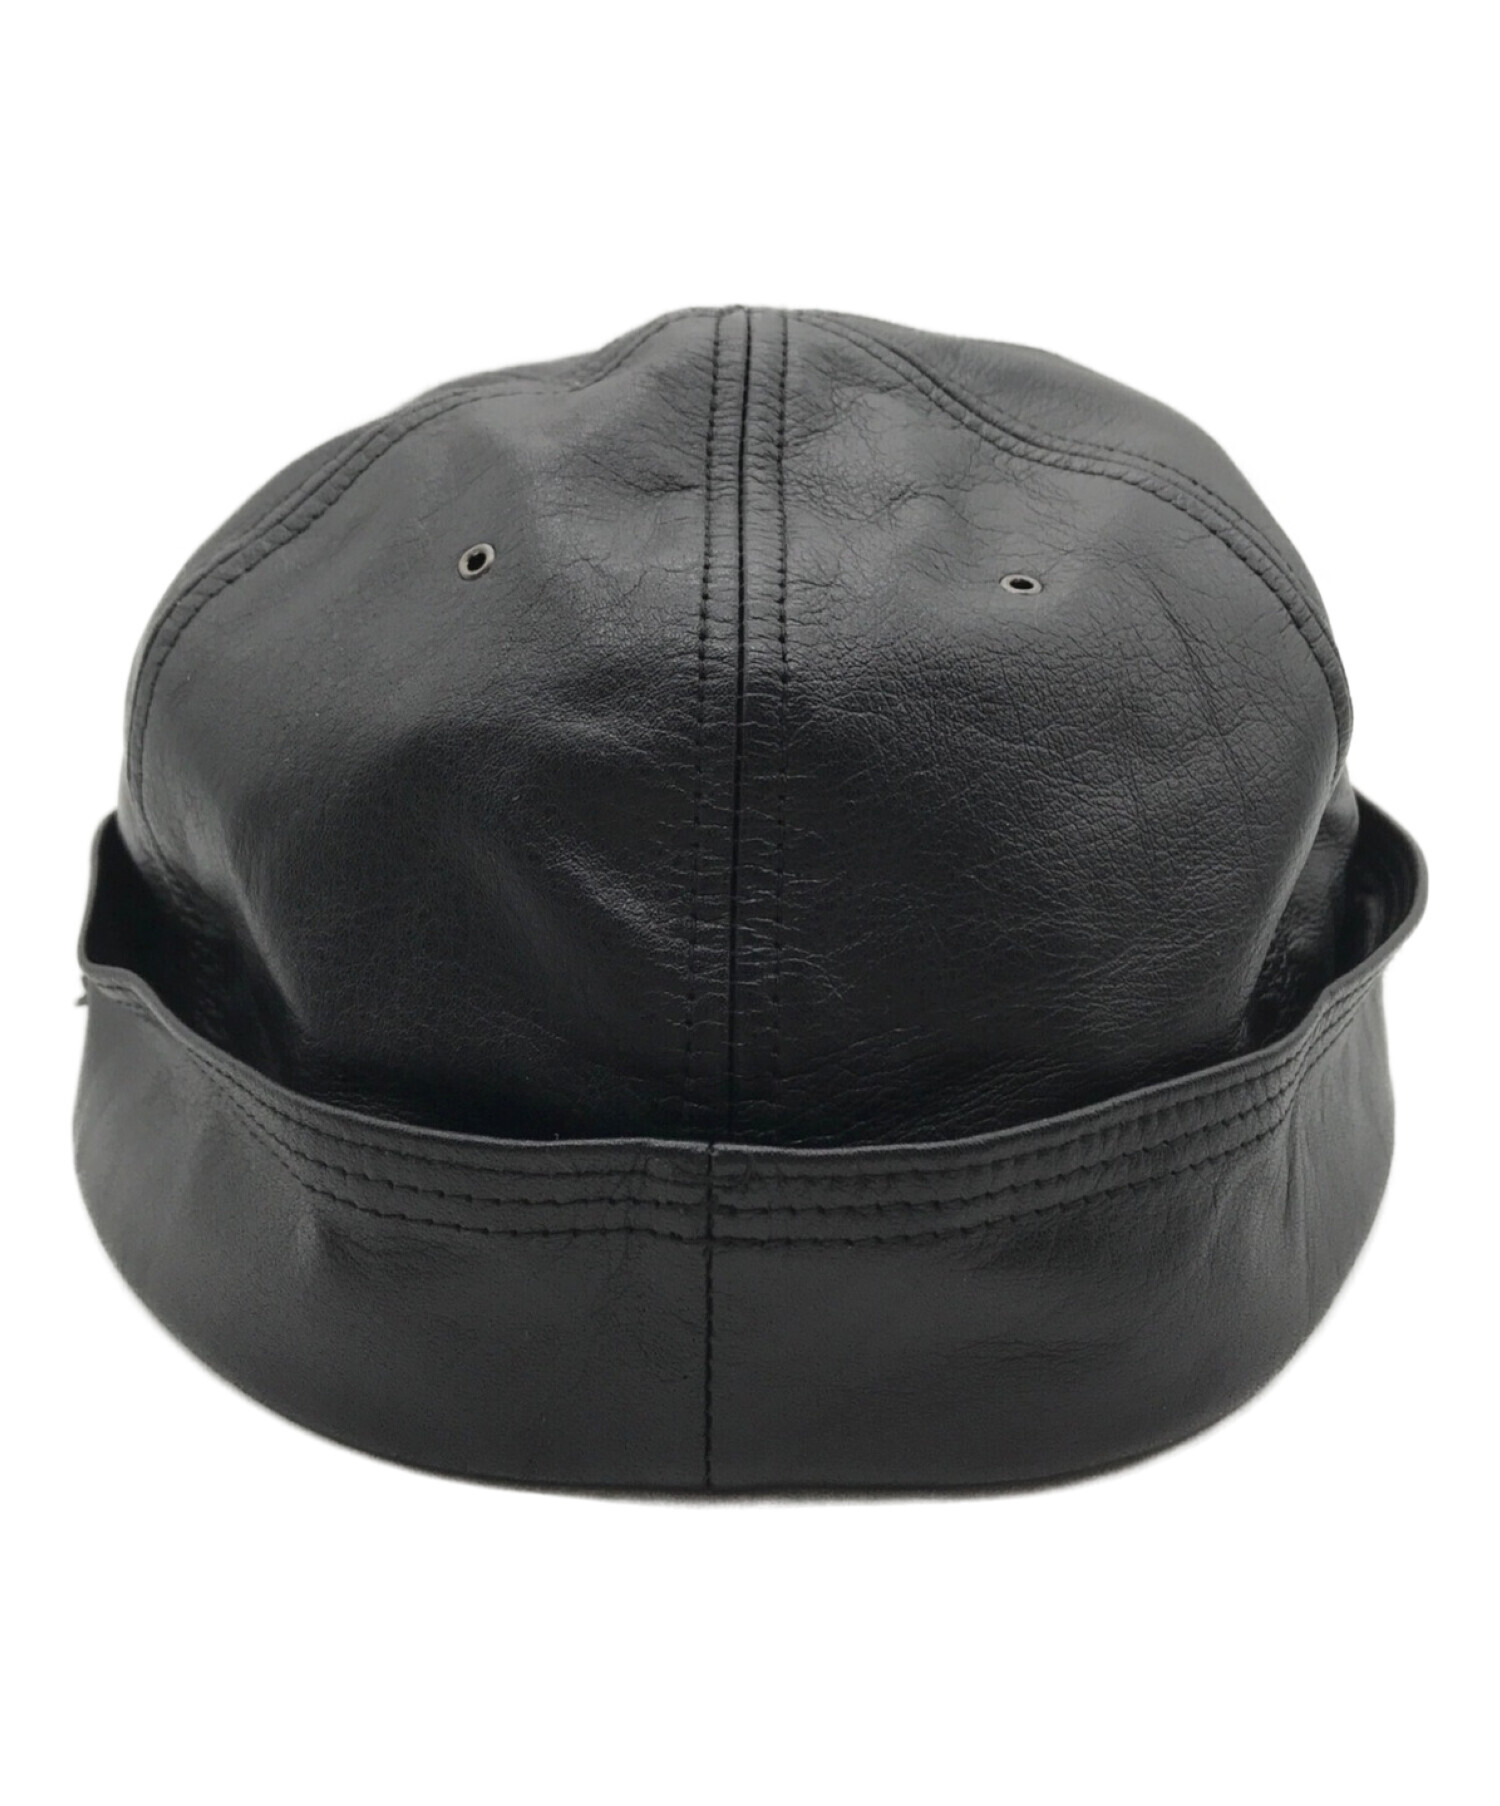 SOLARIS & Co. レザー バケットハット - 帽子